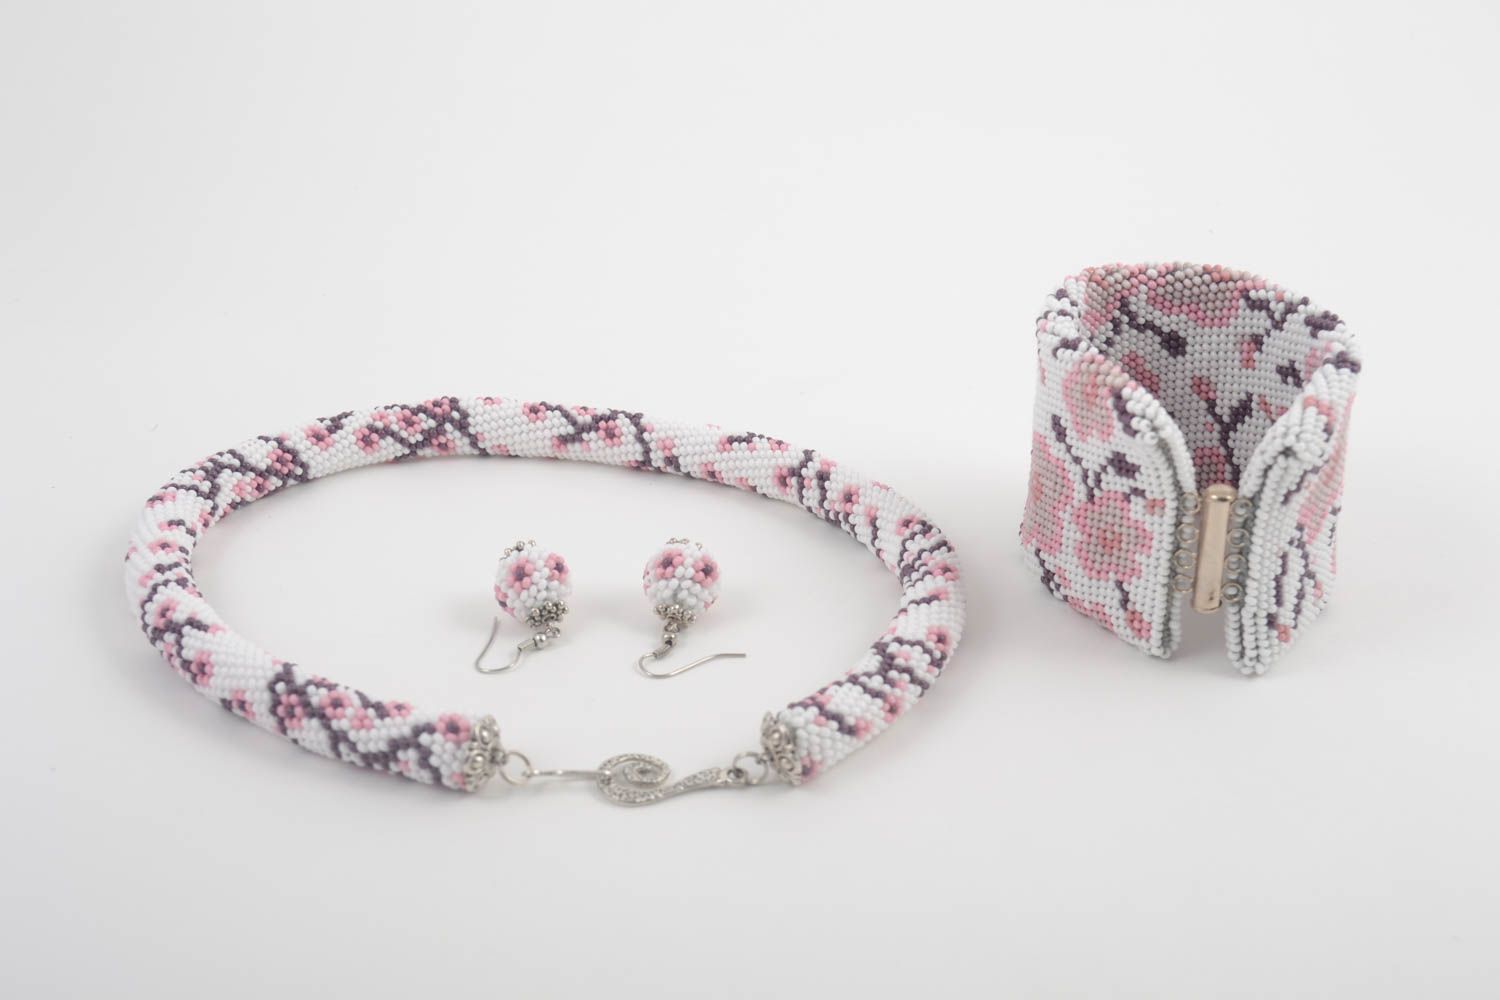 Elegant unusual necklace handmade stylish earrings beautiful bracelet photo 2